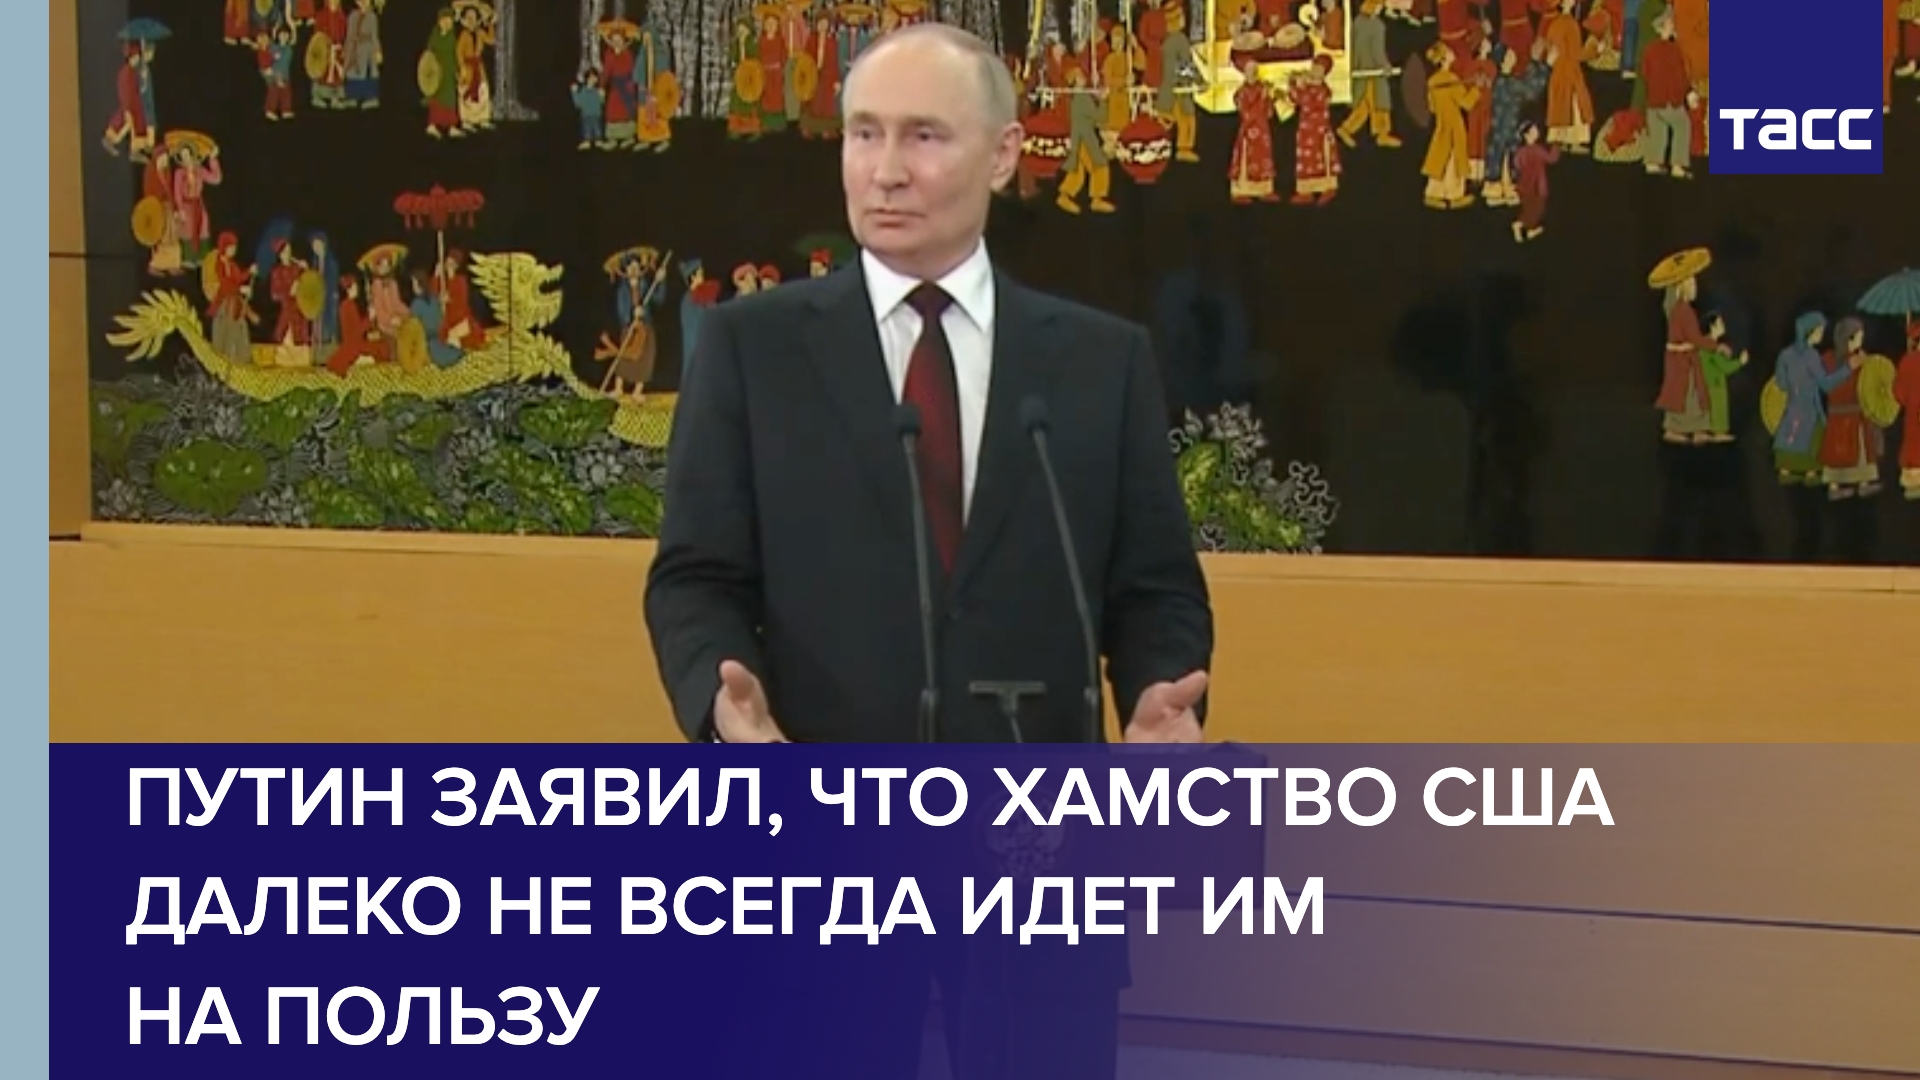 Мир не простит западным странам снобизма и давления, связанных с санкциями, заявил Путин